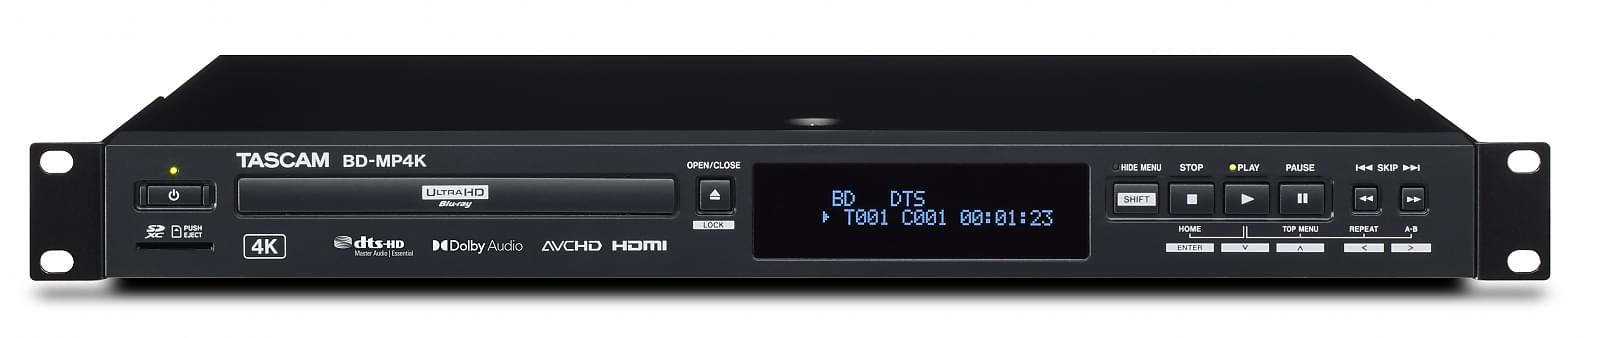 Profesjonalny odtwarzacz multimedialny/Blu-Ray 4K/UHD w trasę i do instalacji | Tascam BD-MP4K